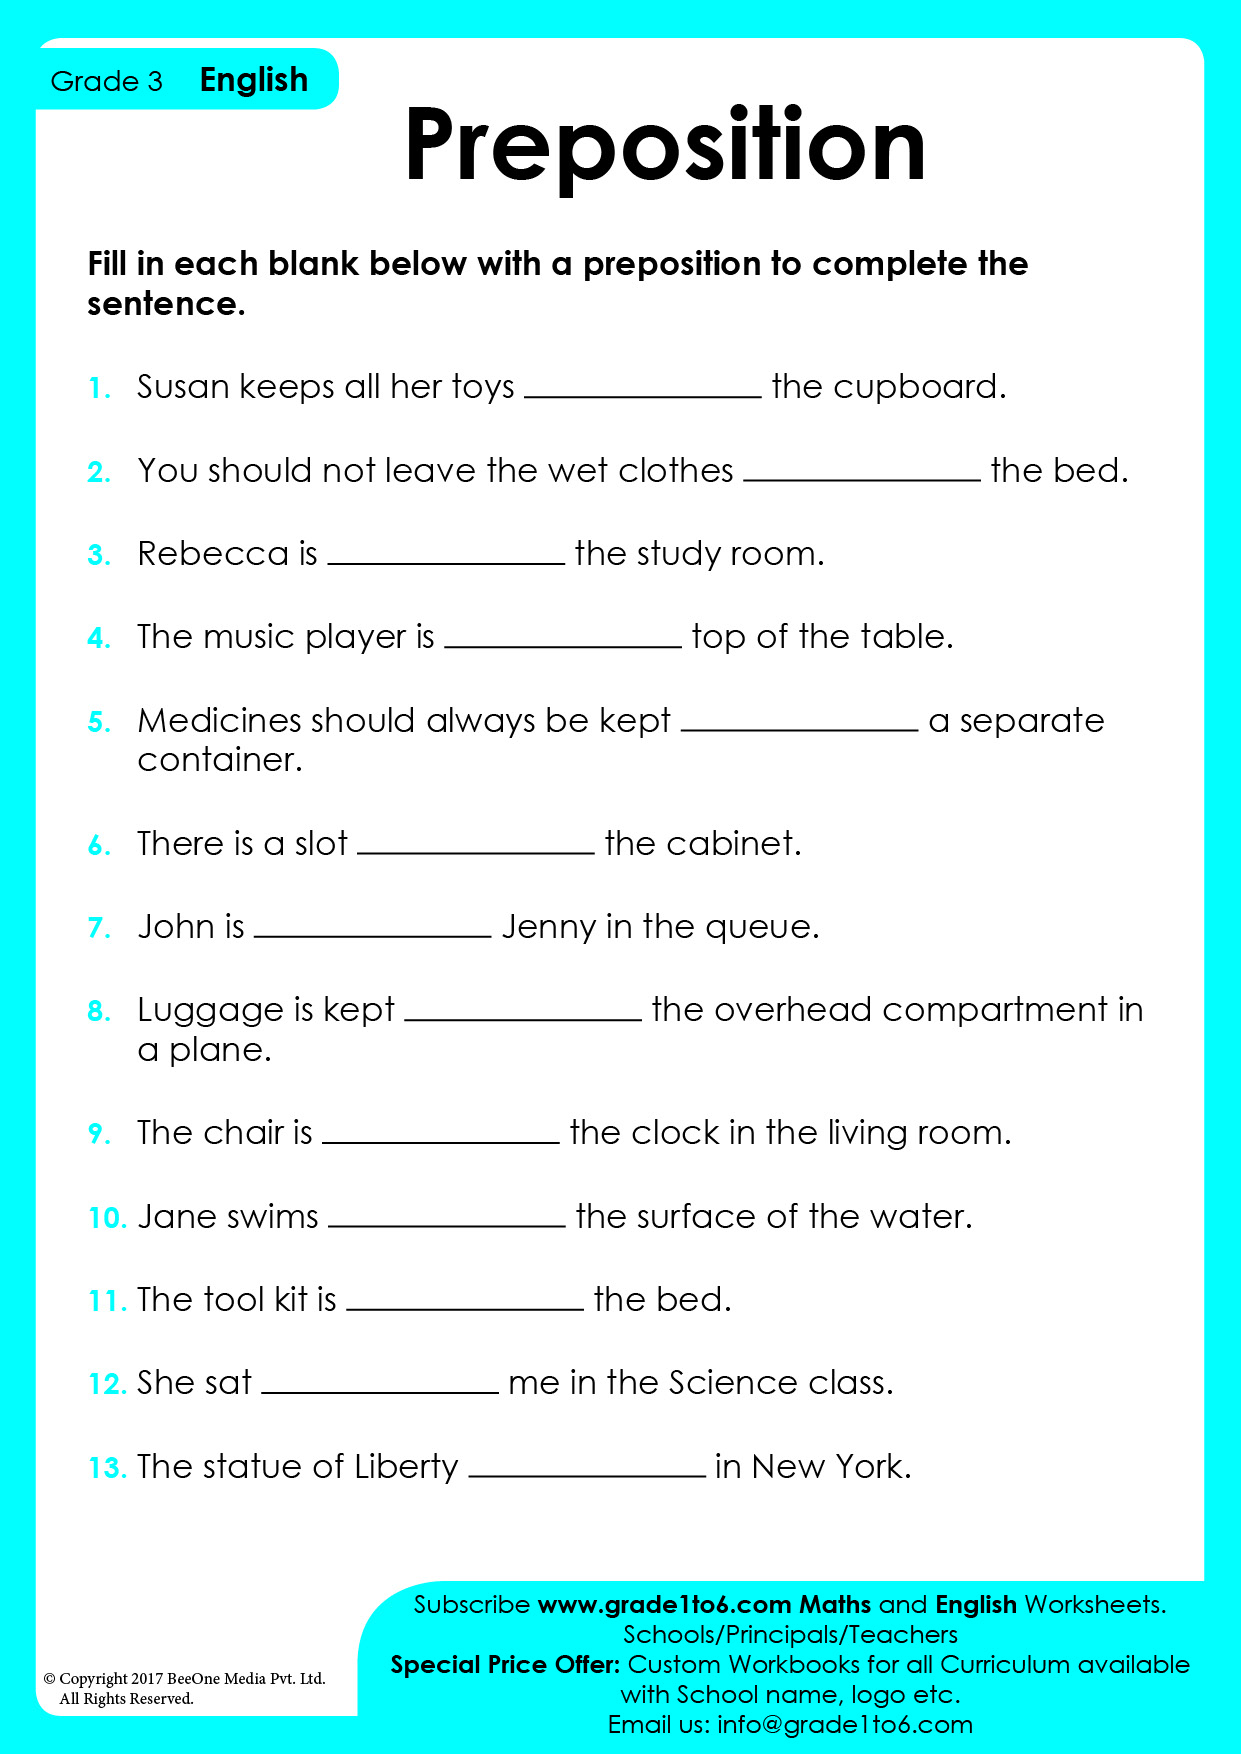 preposition-picture-worksheet-worksheets-for-kindergarten